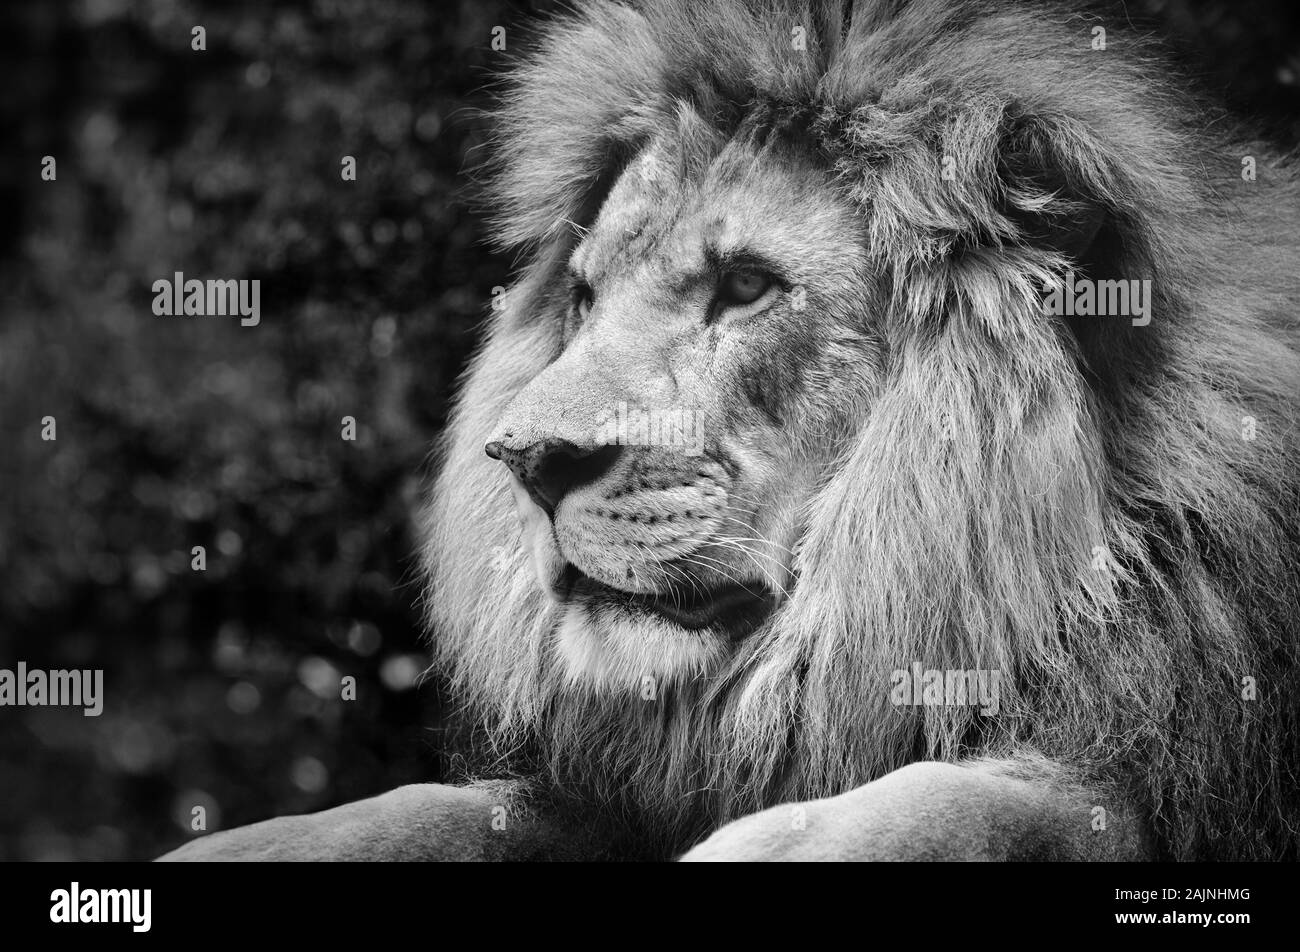 Fort contraste noir et blanc d'un lion mâle dans une pose royale Banque D'Images